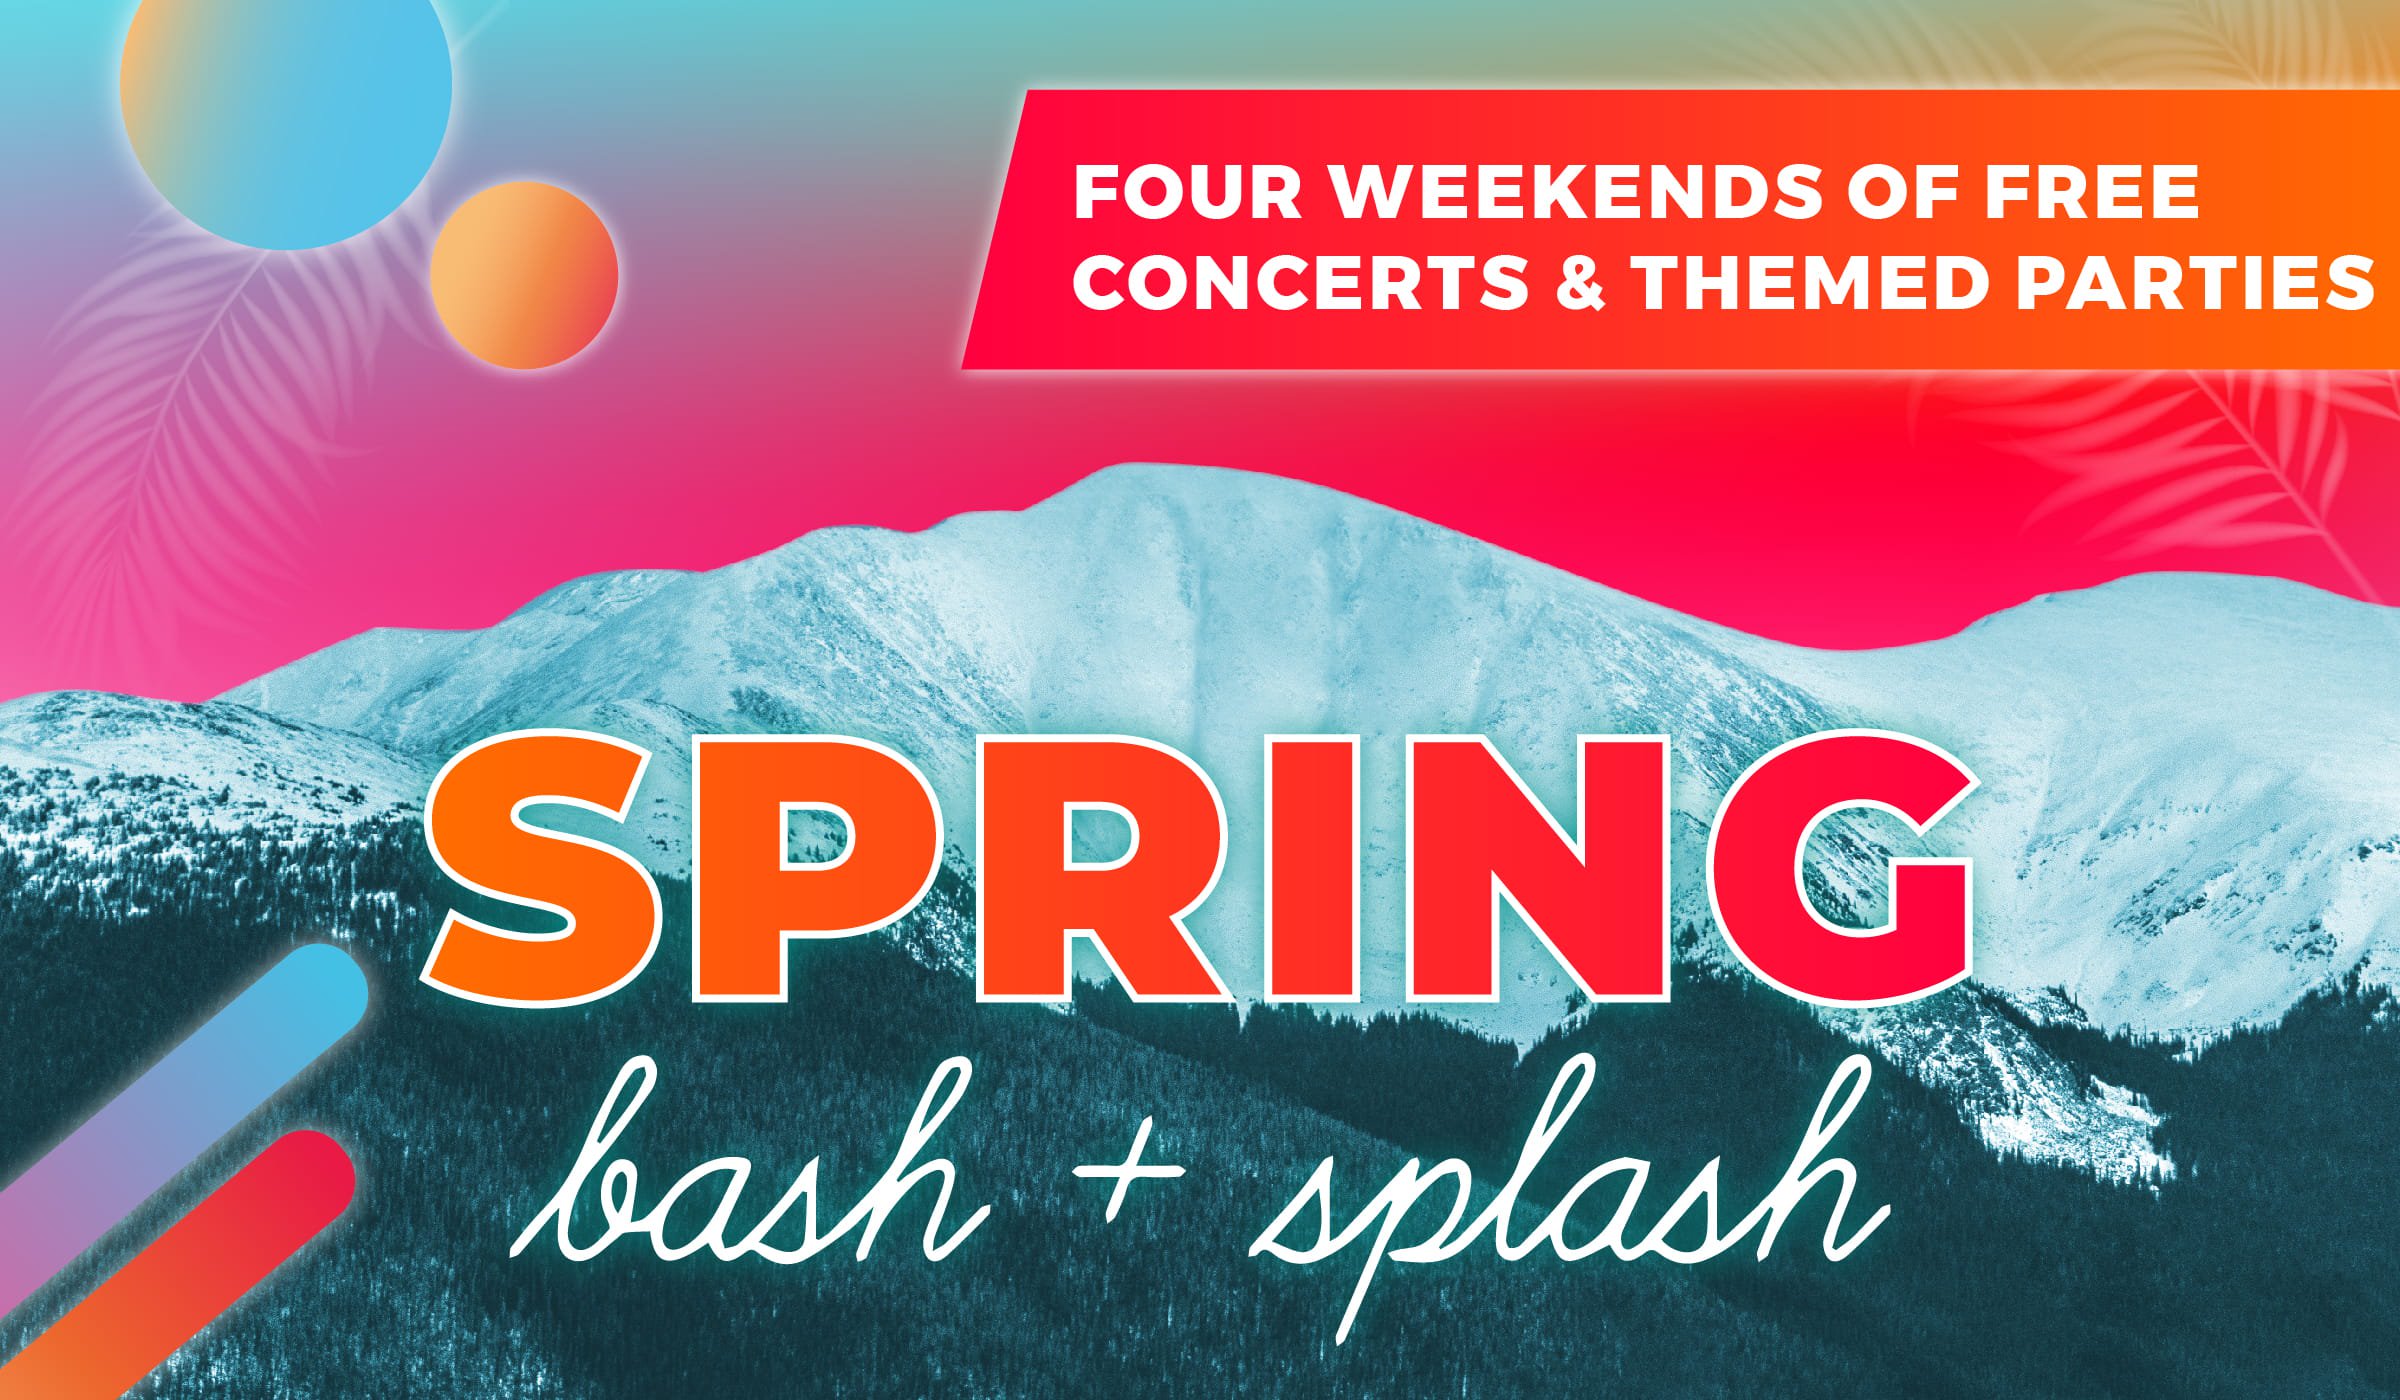 Spring Bash + Splash at Winter Park Resort